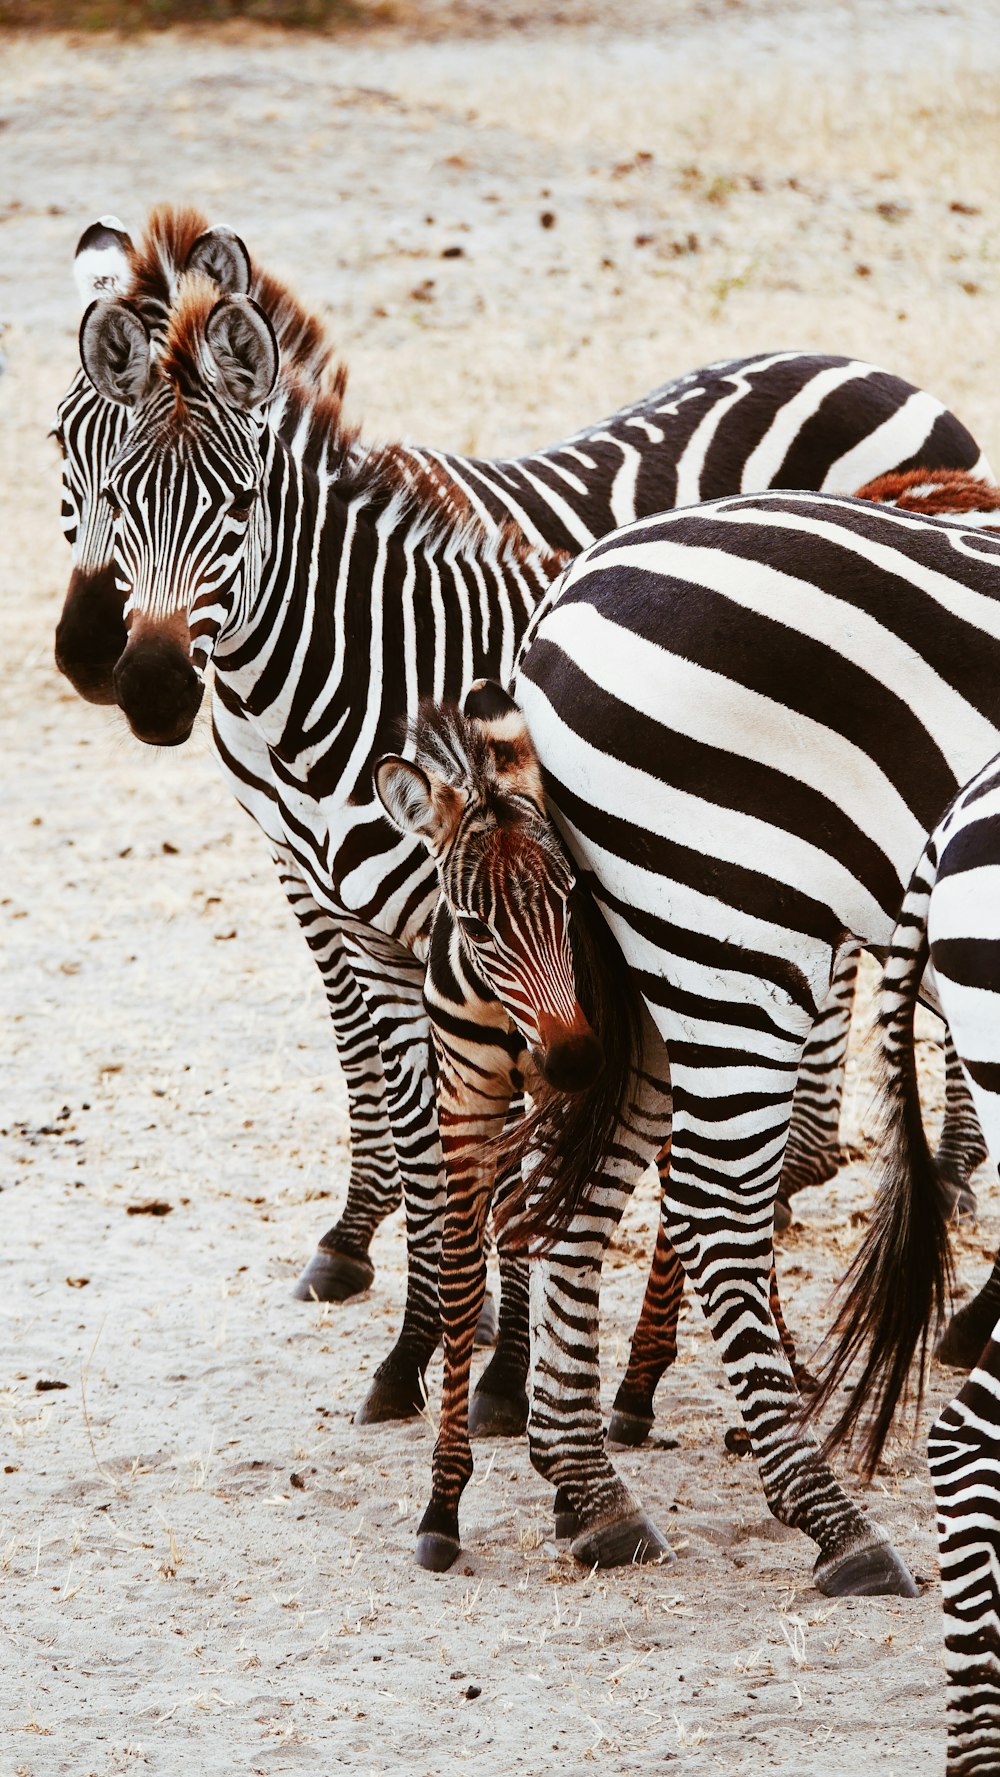 herd of zebras